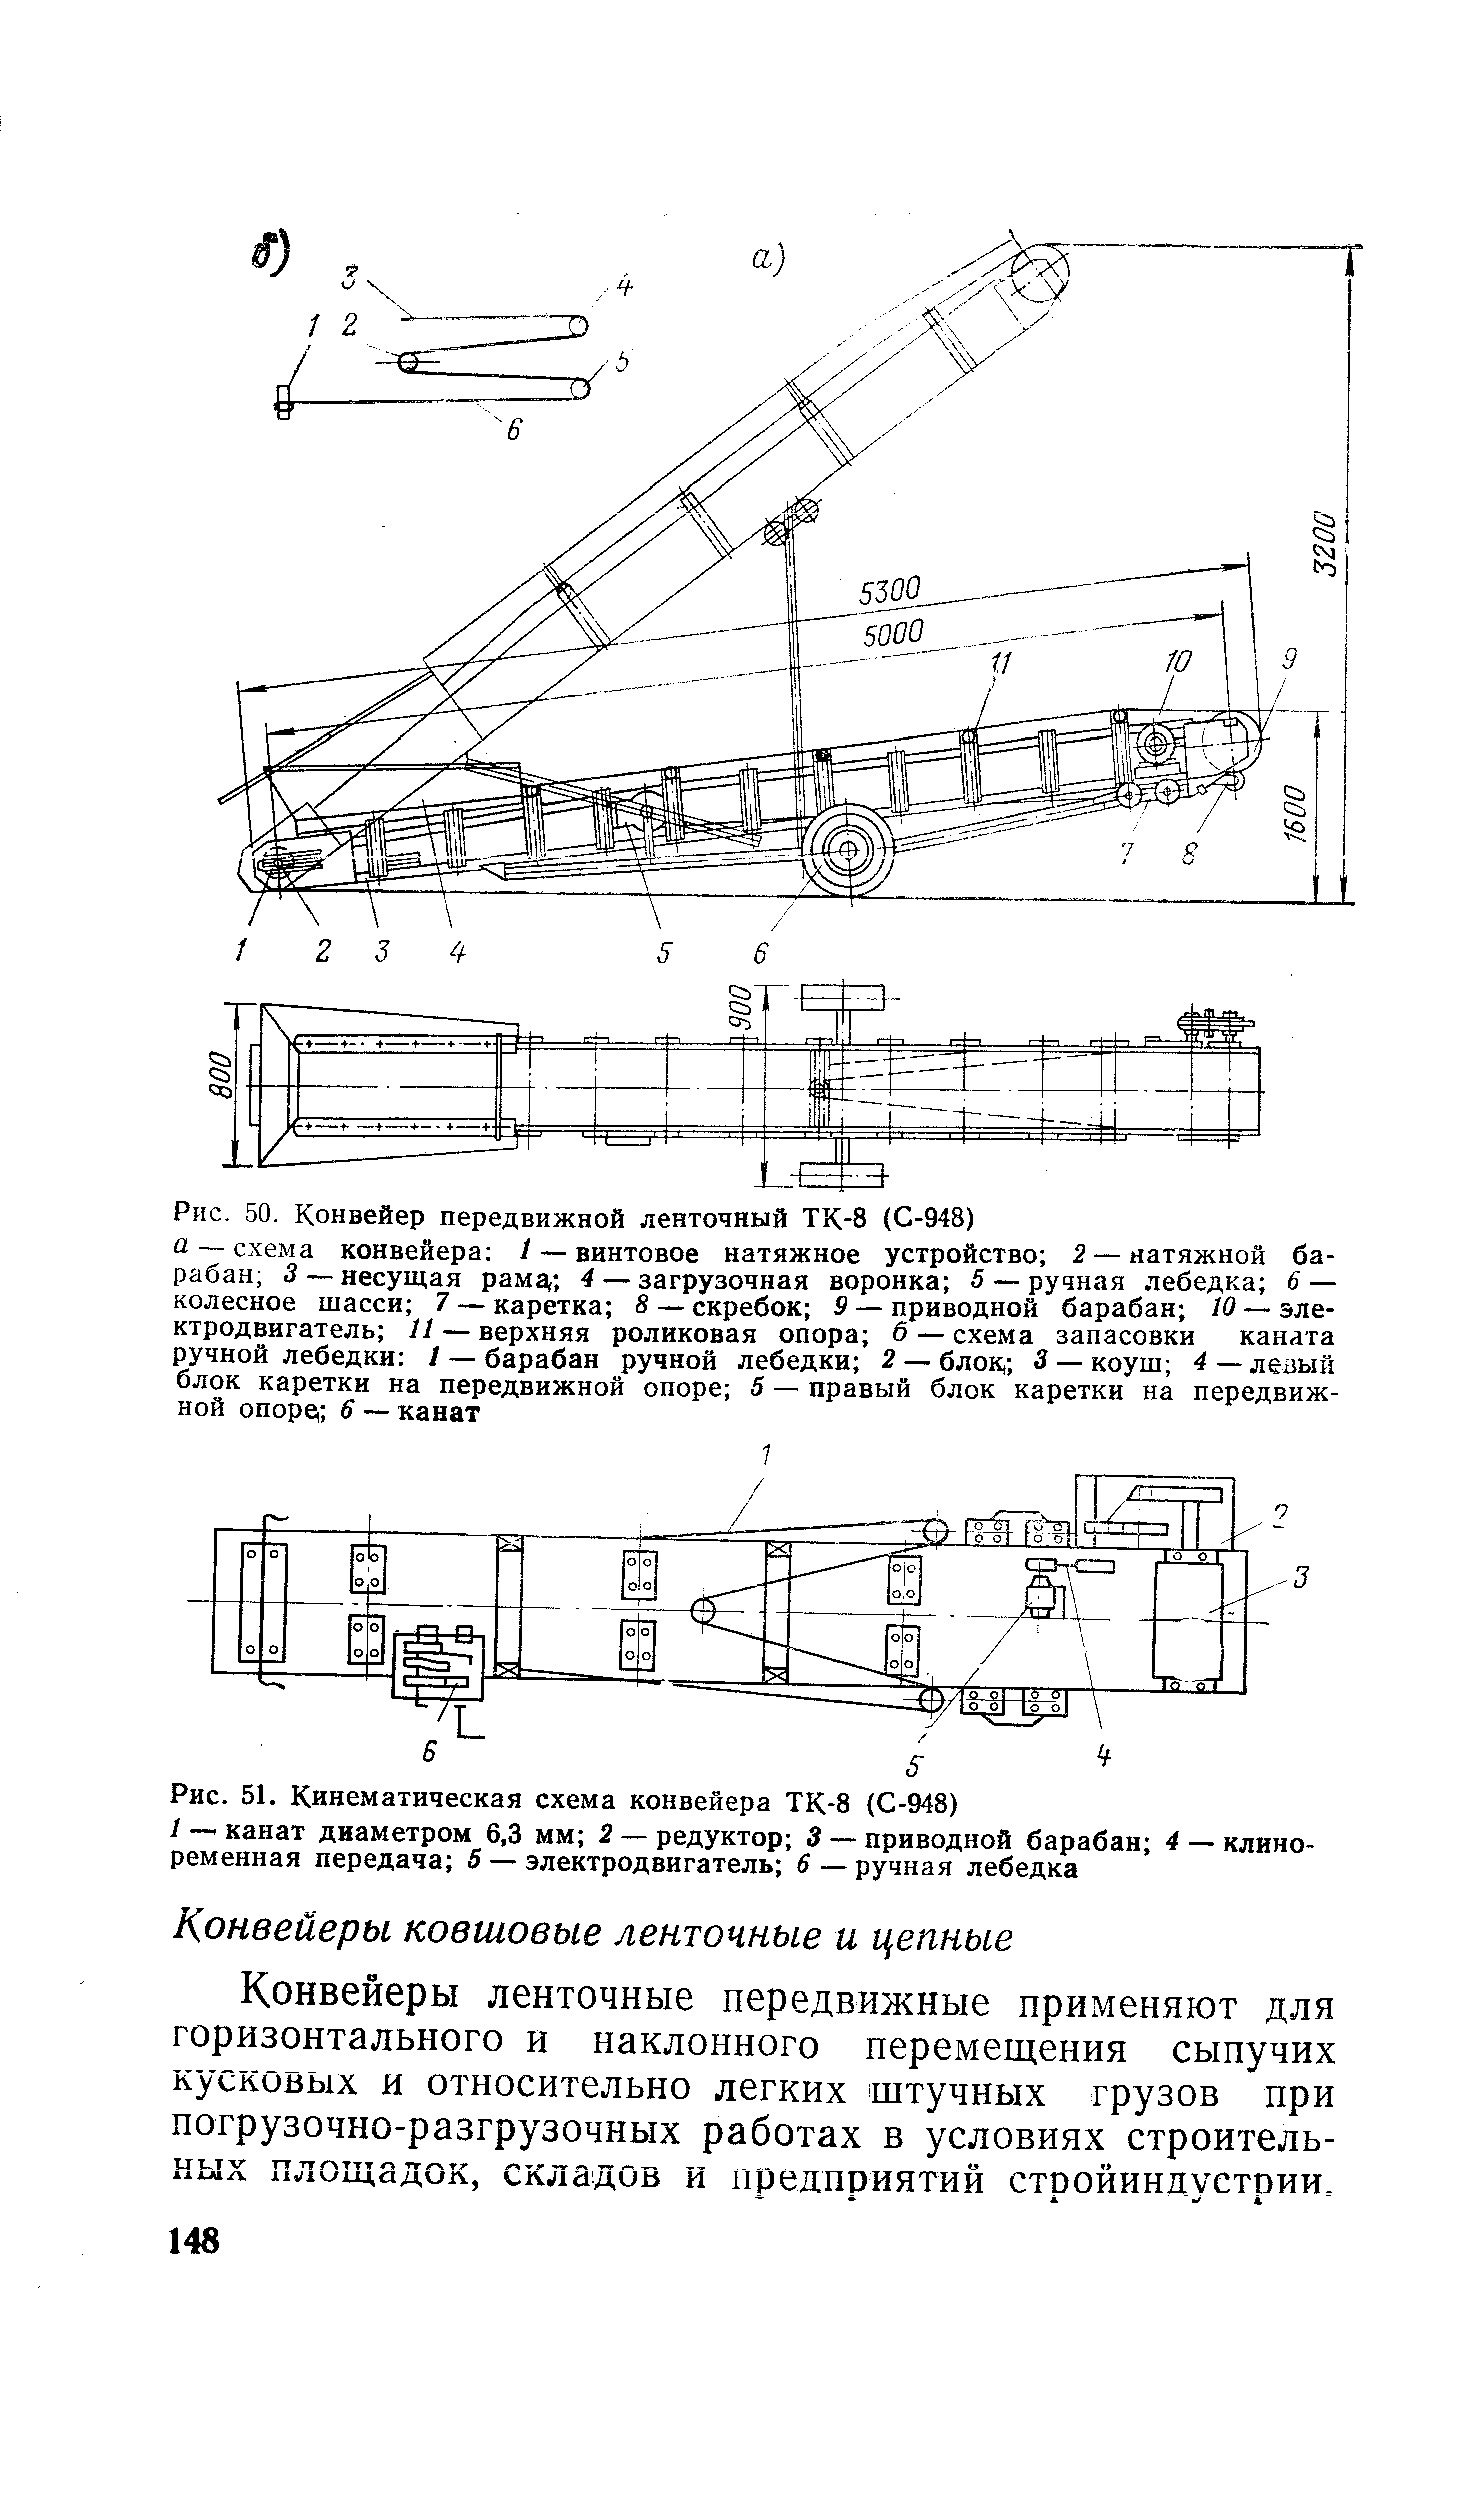 Рис. 50. Конвейер передвижной ленточный ТК -8 (С-948)
